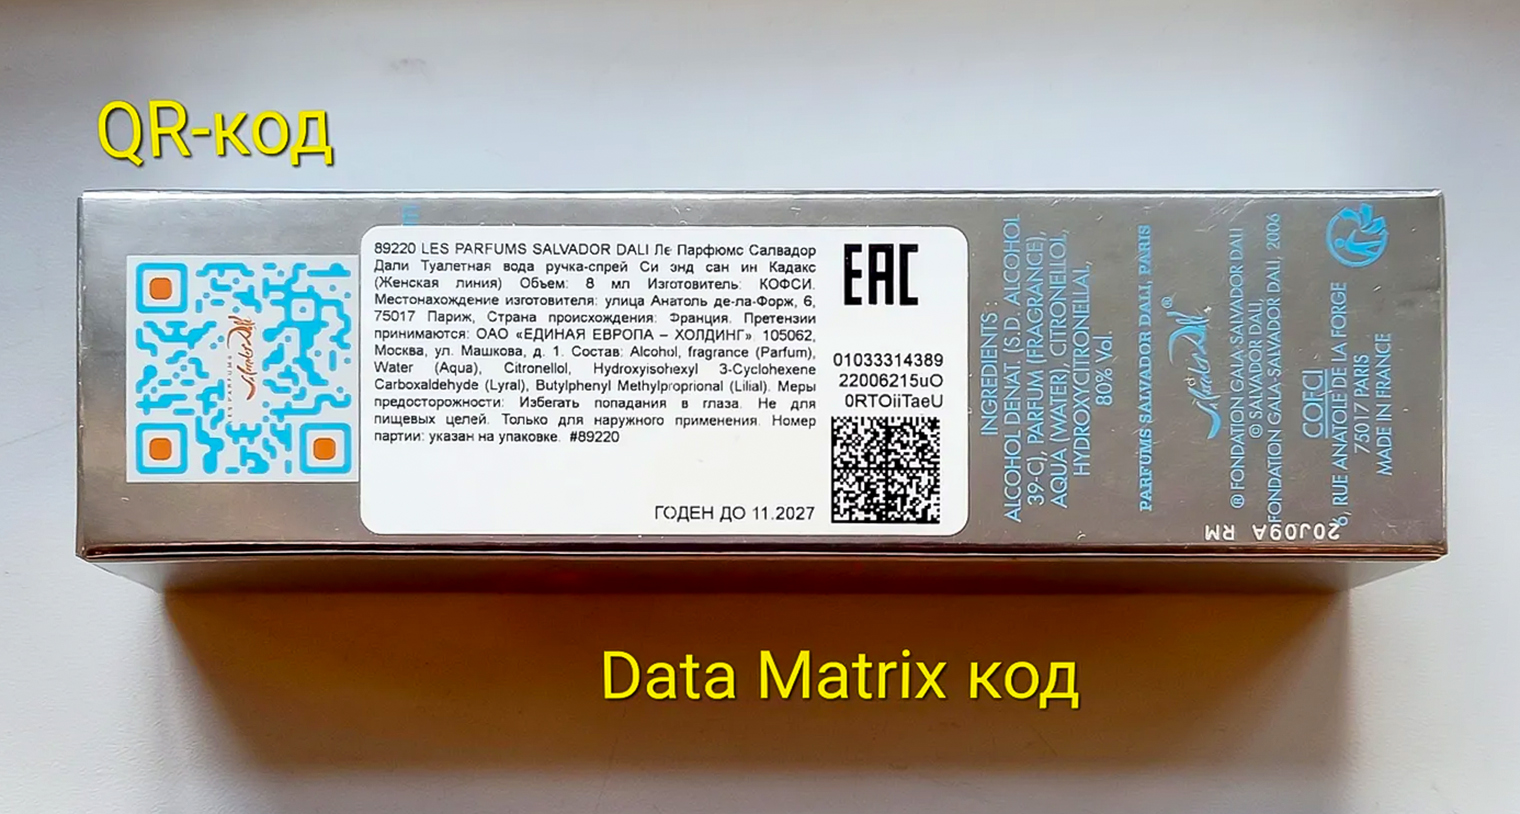 На каждую упаковку парфюма наносится уникальный код в формате datamatrix. Он очень похож на знакомый всем QR⁠-⁠код, визуально их можно отличить по наличию нескольких более крупных квадратов у QR⁠-⁠кода